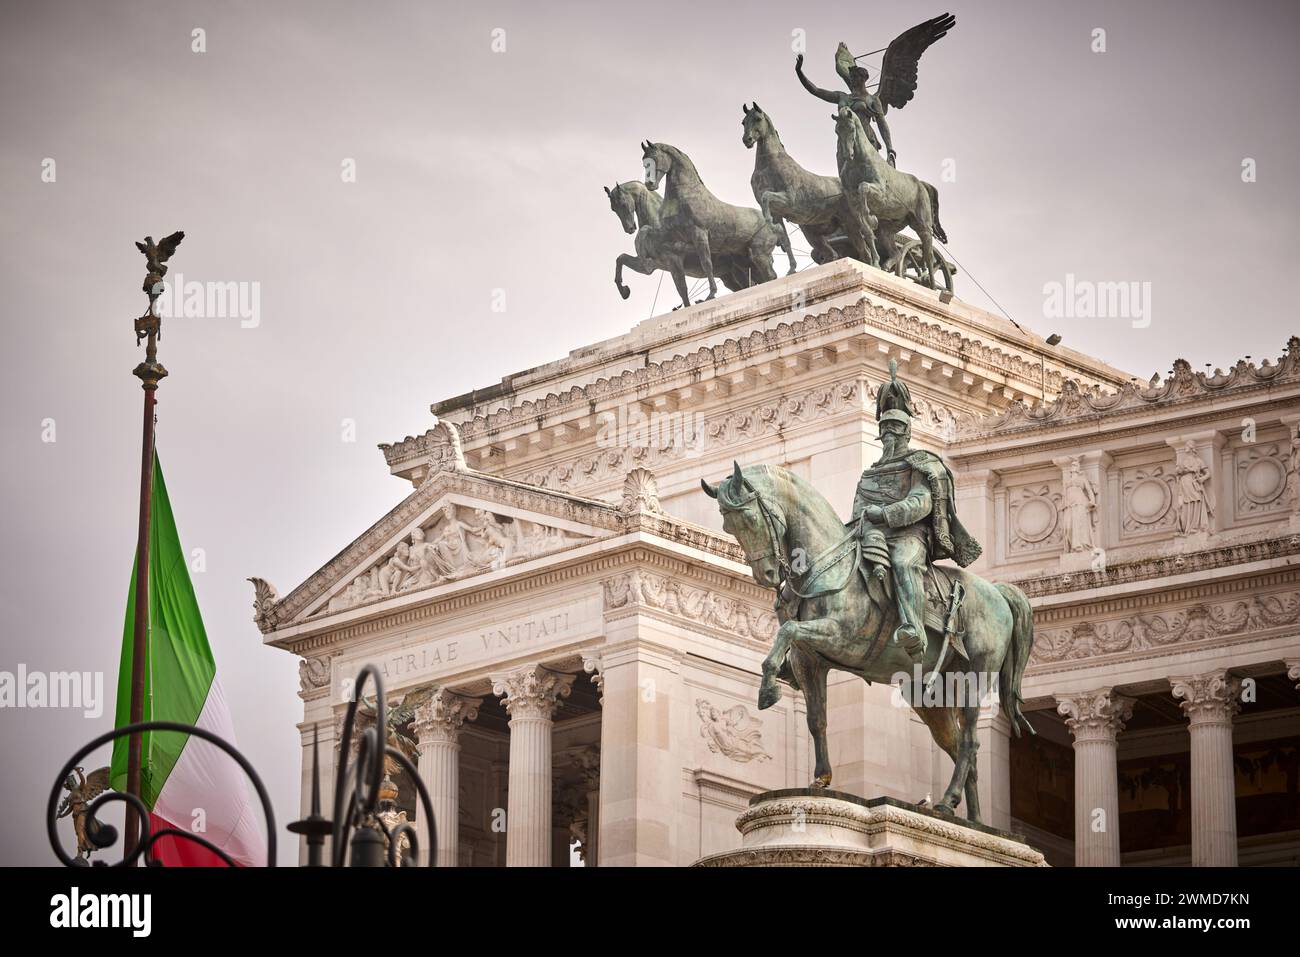 Grande tempio neoclassico in marmo, monumento a Vittorio Emanuele II e statua equestre di Vittorio Emanuele II a Roma, Italia. Foto Stock